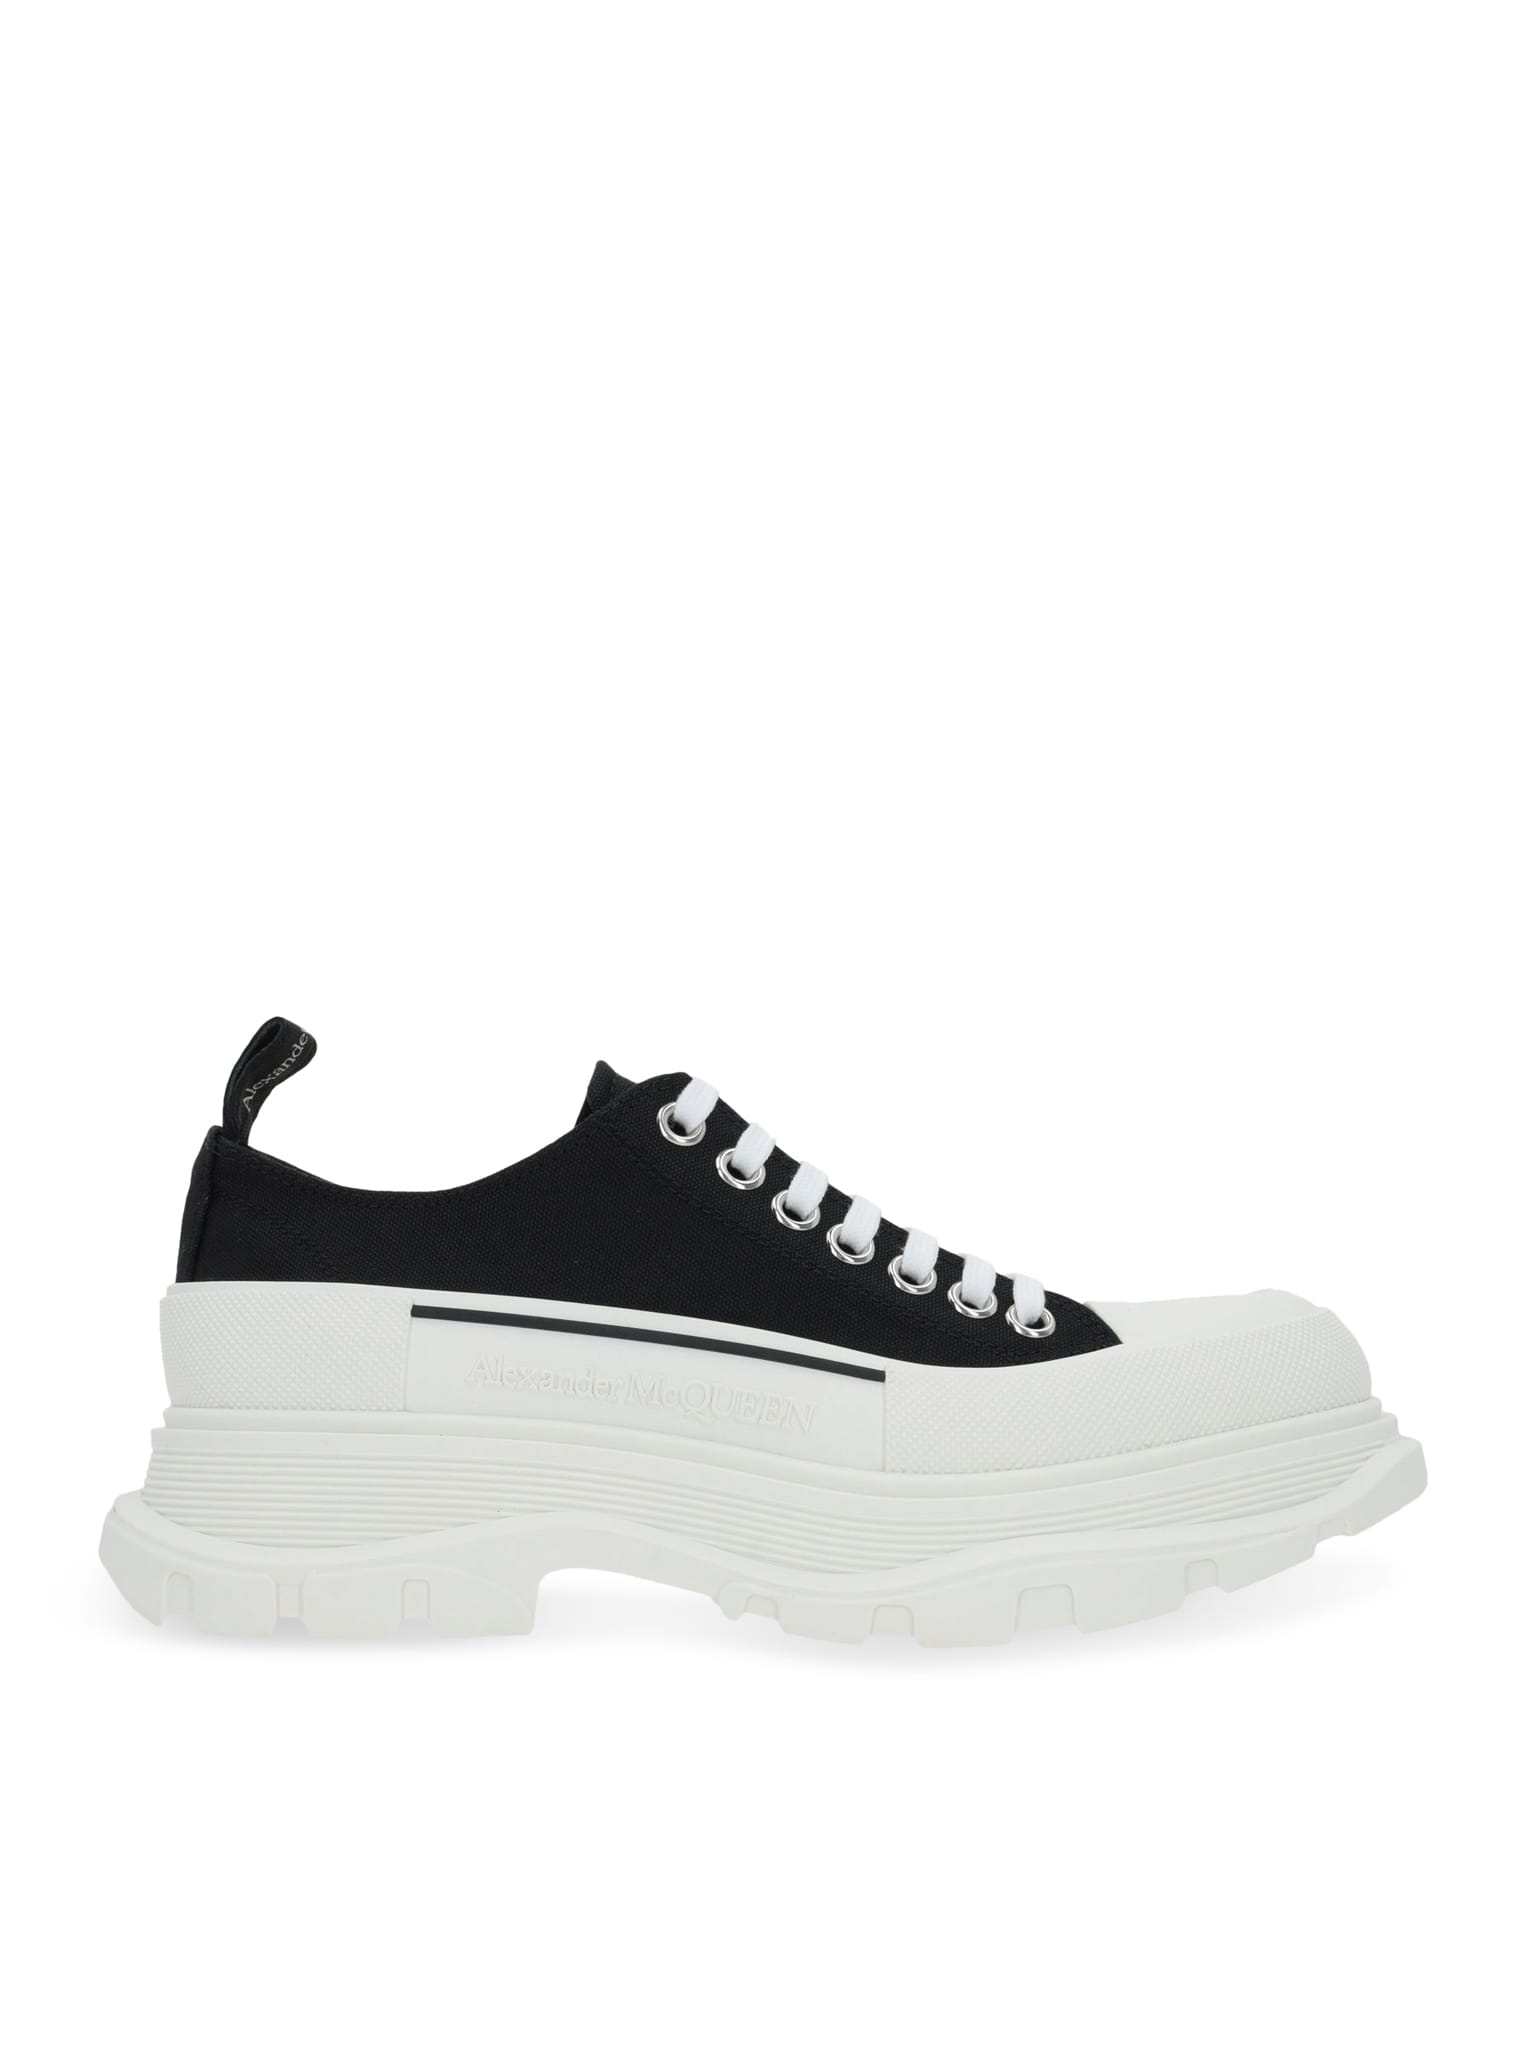 Shop Alexander Mcqueen Shoe Tread.fa.s.rub. Can.sa./tr.sl.band/mcq.ri. In Black White